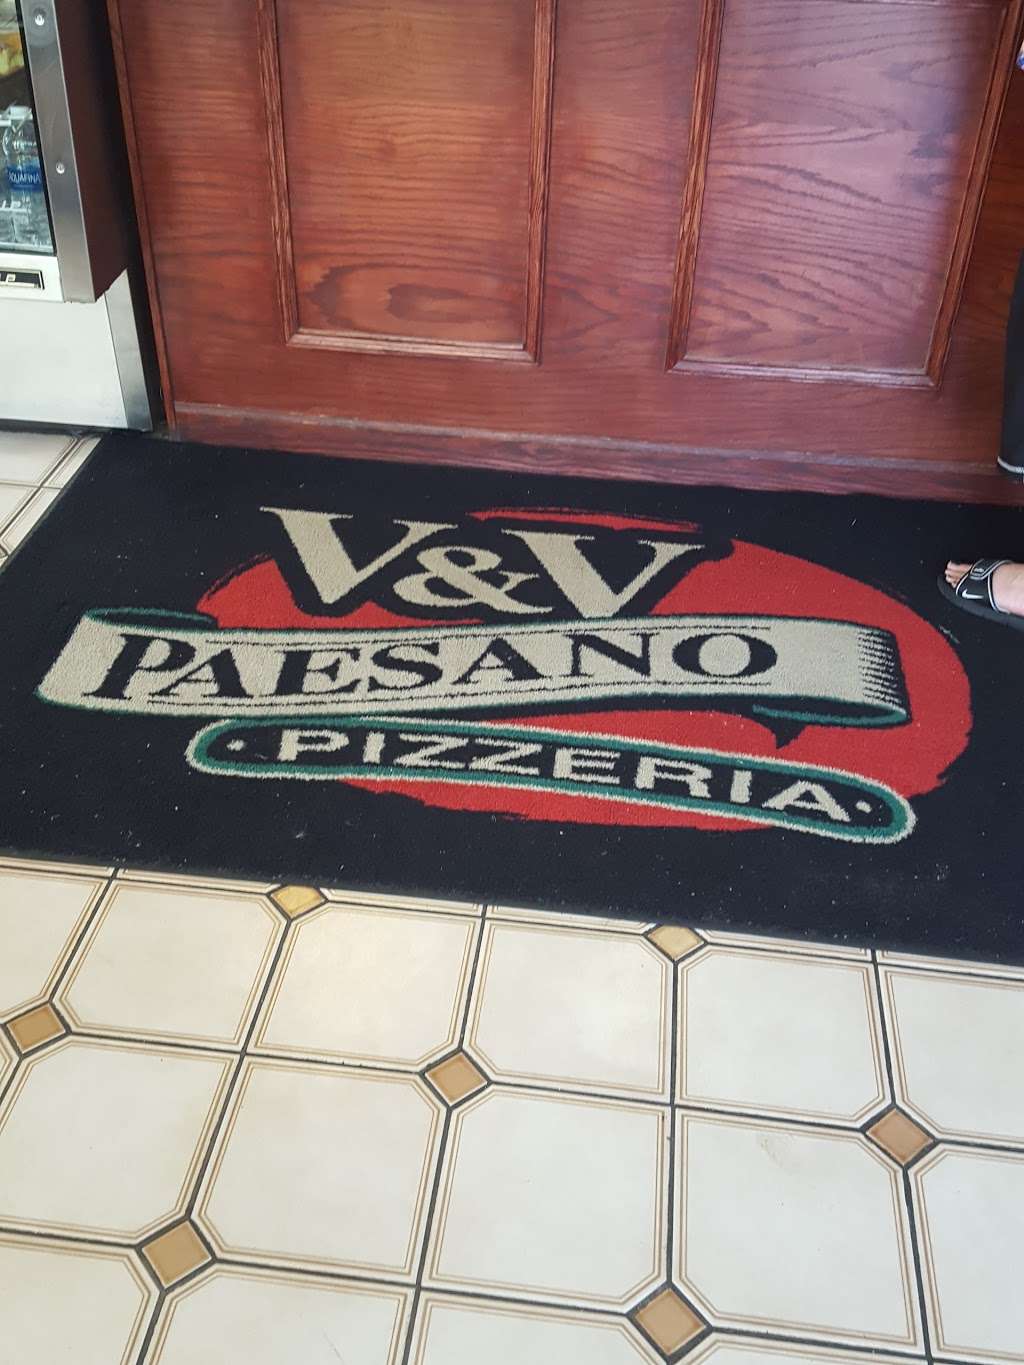 V & V Paesano Pizzeria | 374 S Main St, Bartlett, IL 60103, USA | Phone: (630) 289-5780